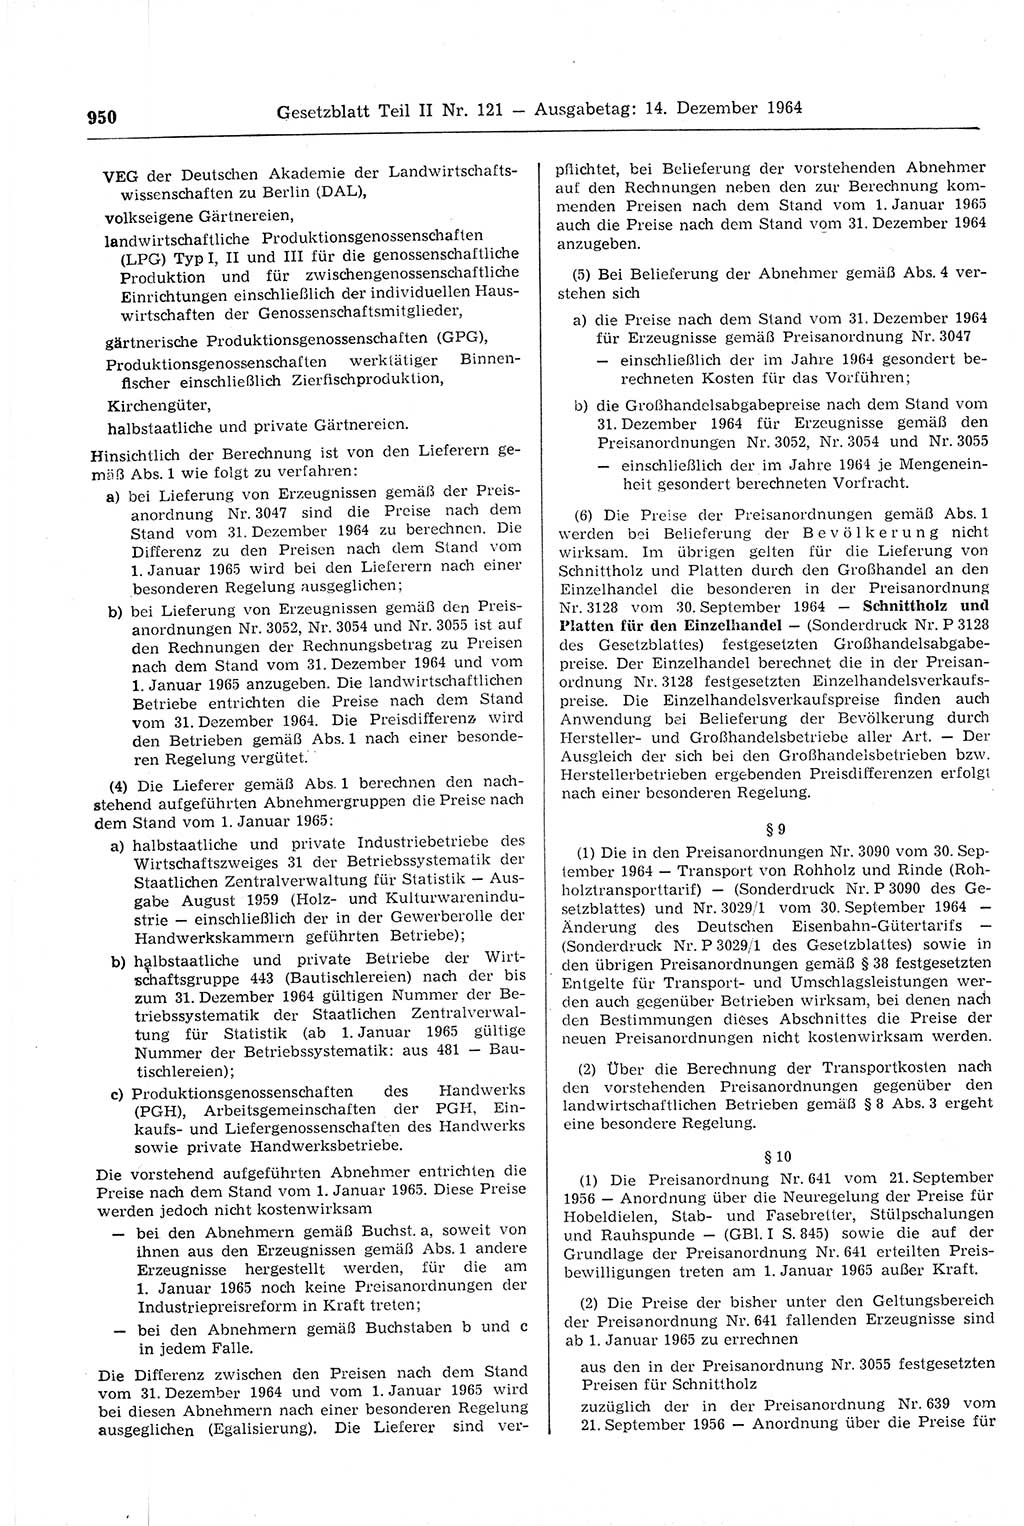 Gesetzblatt (GBl.) der Deutschen Demokratischen Republik (DDR) Teil ⅠⅠ 1964, Seite 950 (GBl. DDR ⅠⅠ 1964, S. 950)